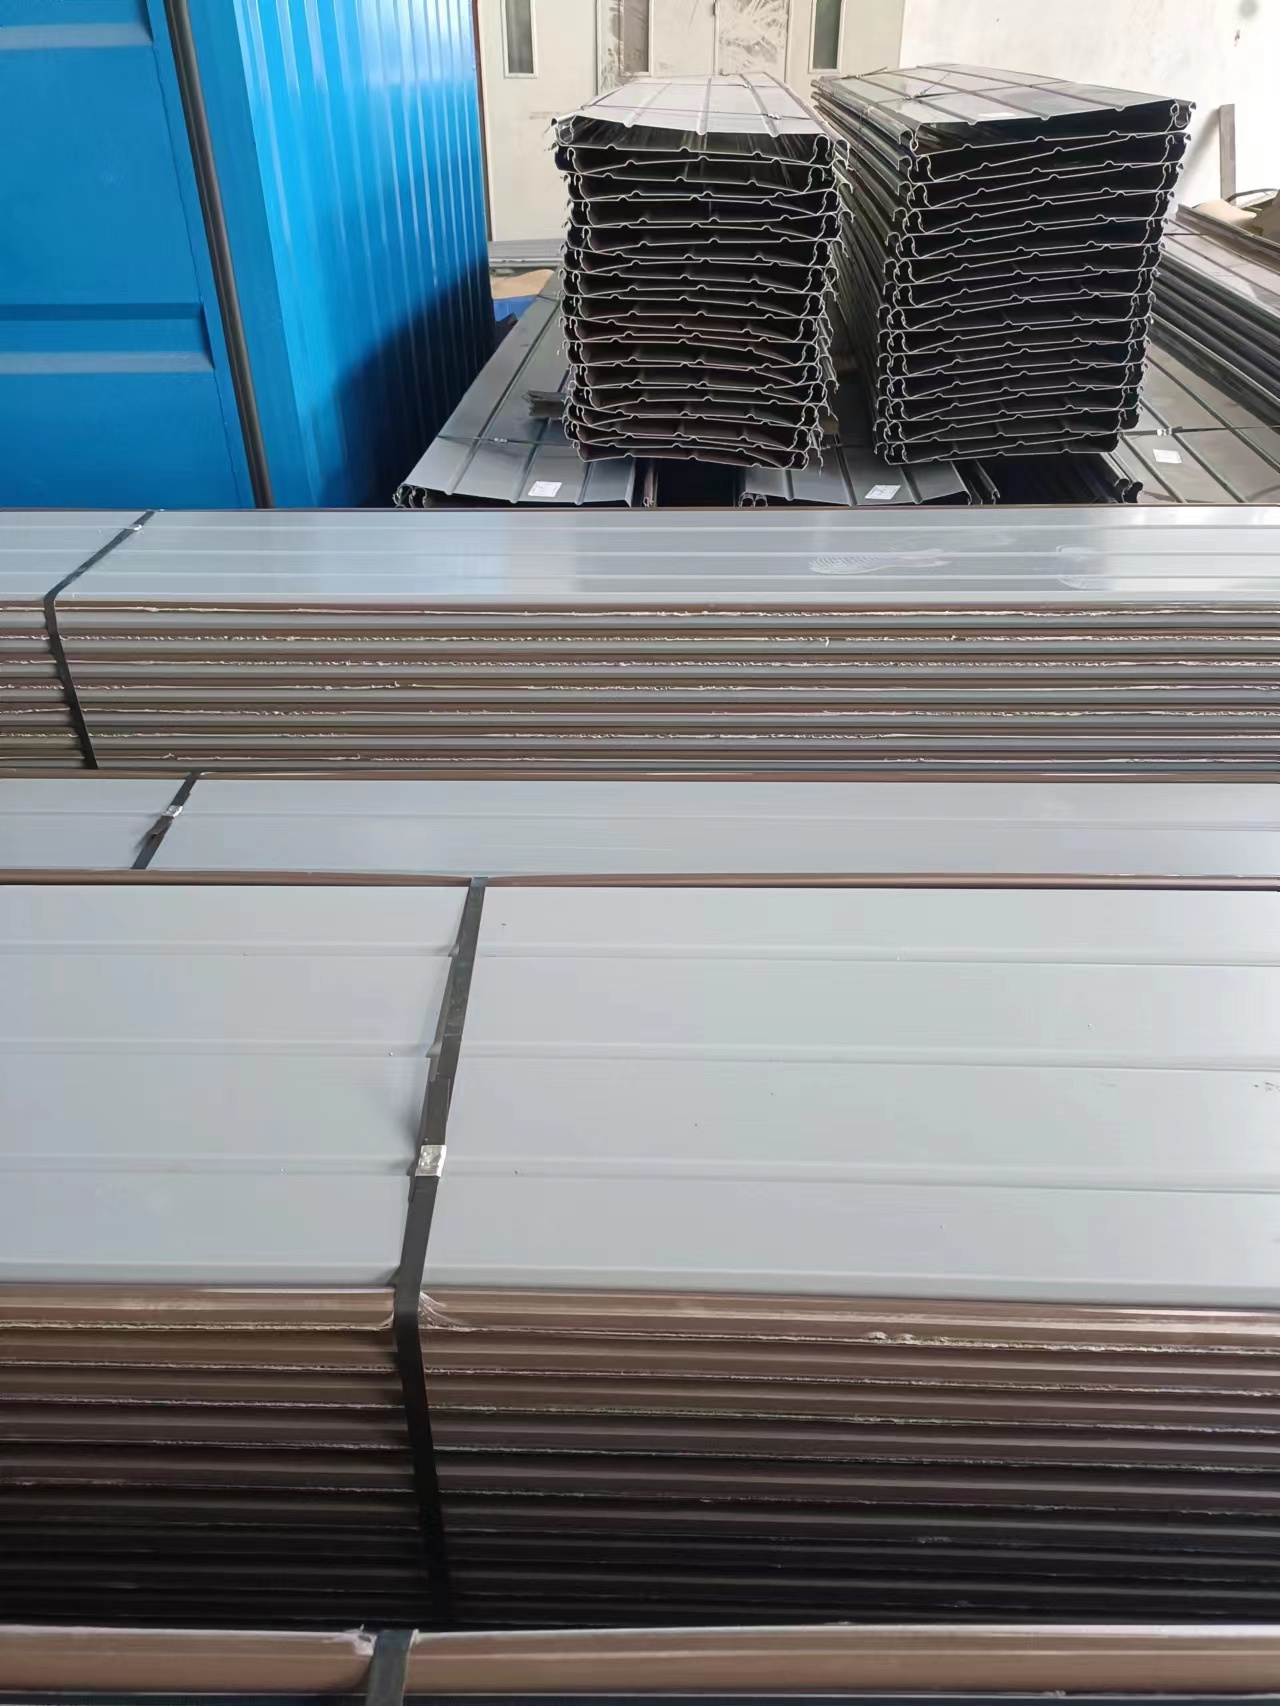 佛山铝镁锰屋面板佛山铝镁锰屋面板广东厂家规格型号齐全